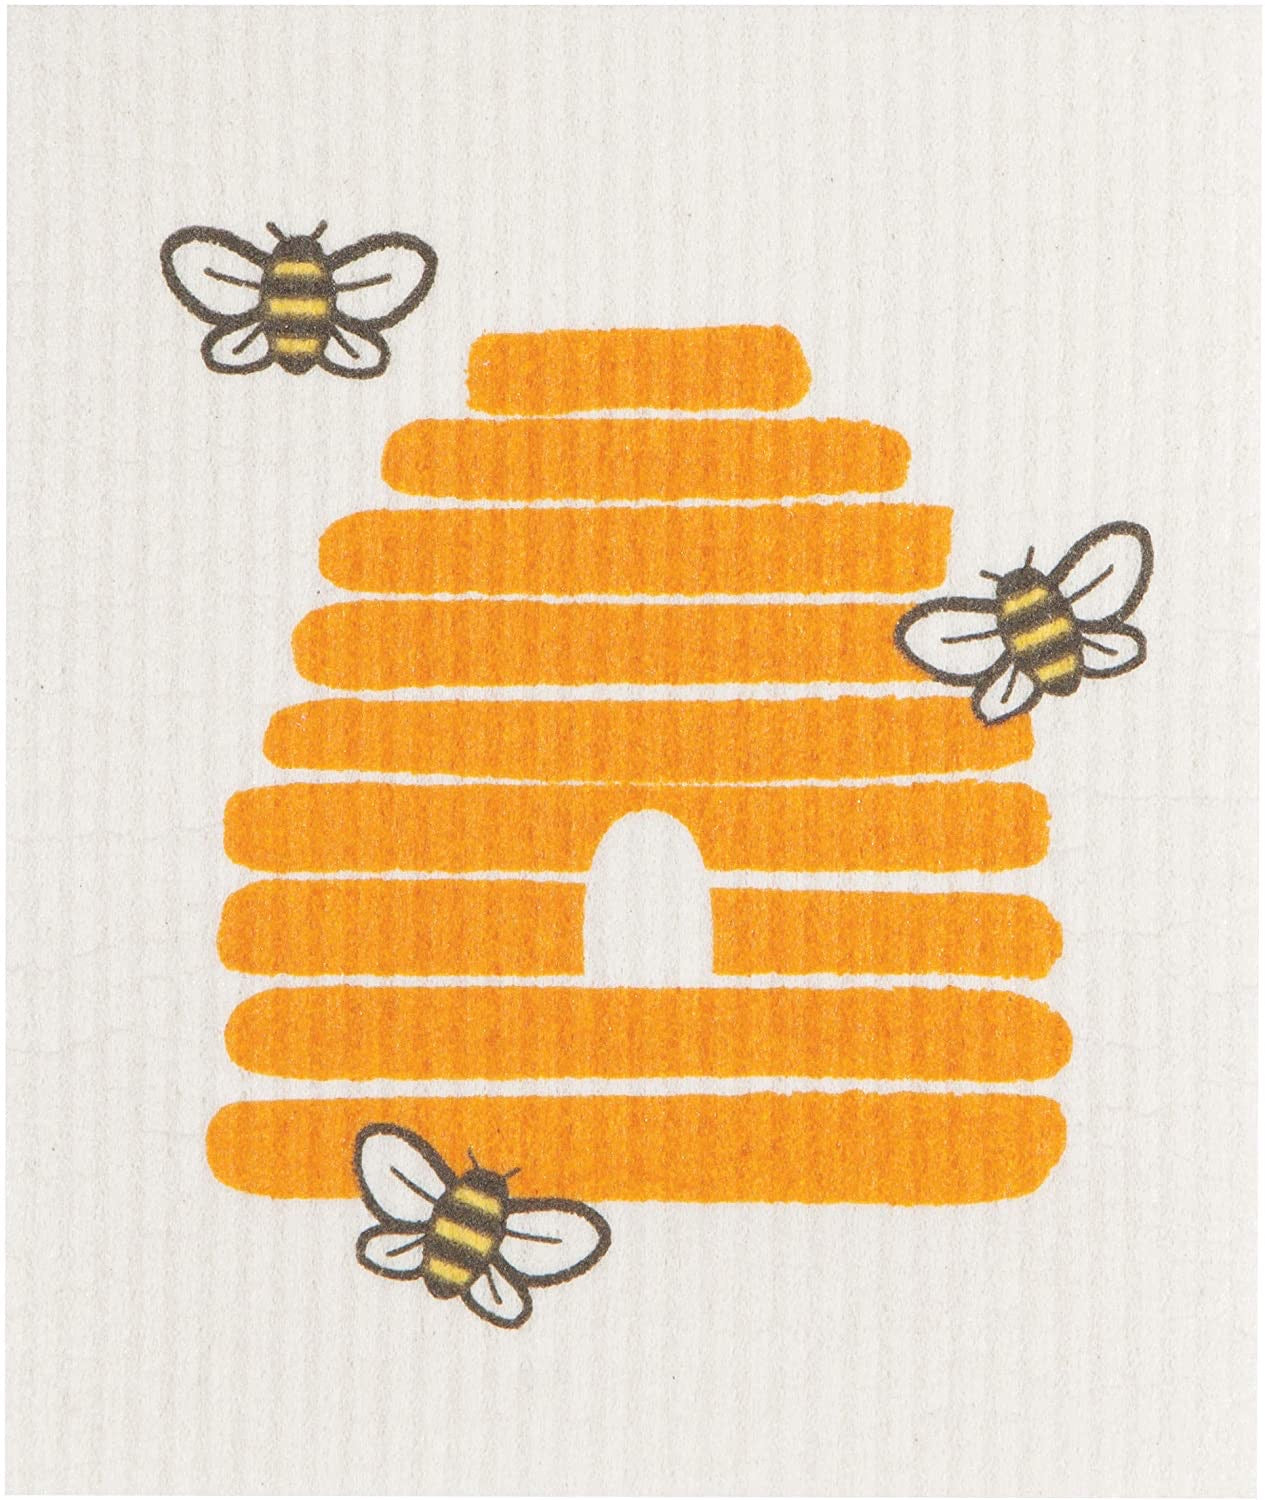 Bees and Hive Swedish Dishcloth